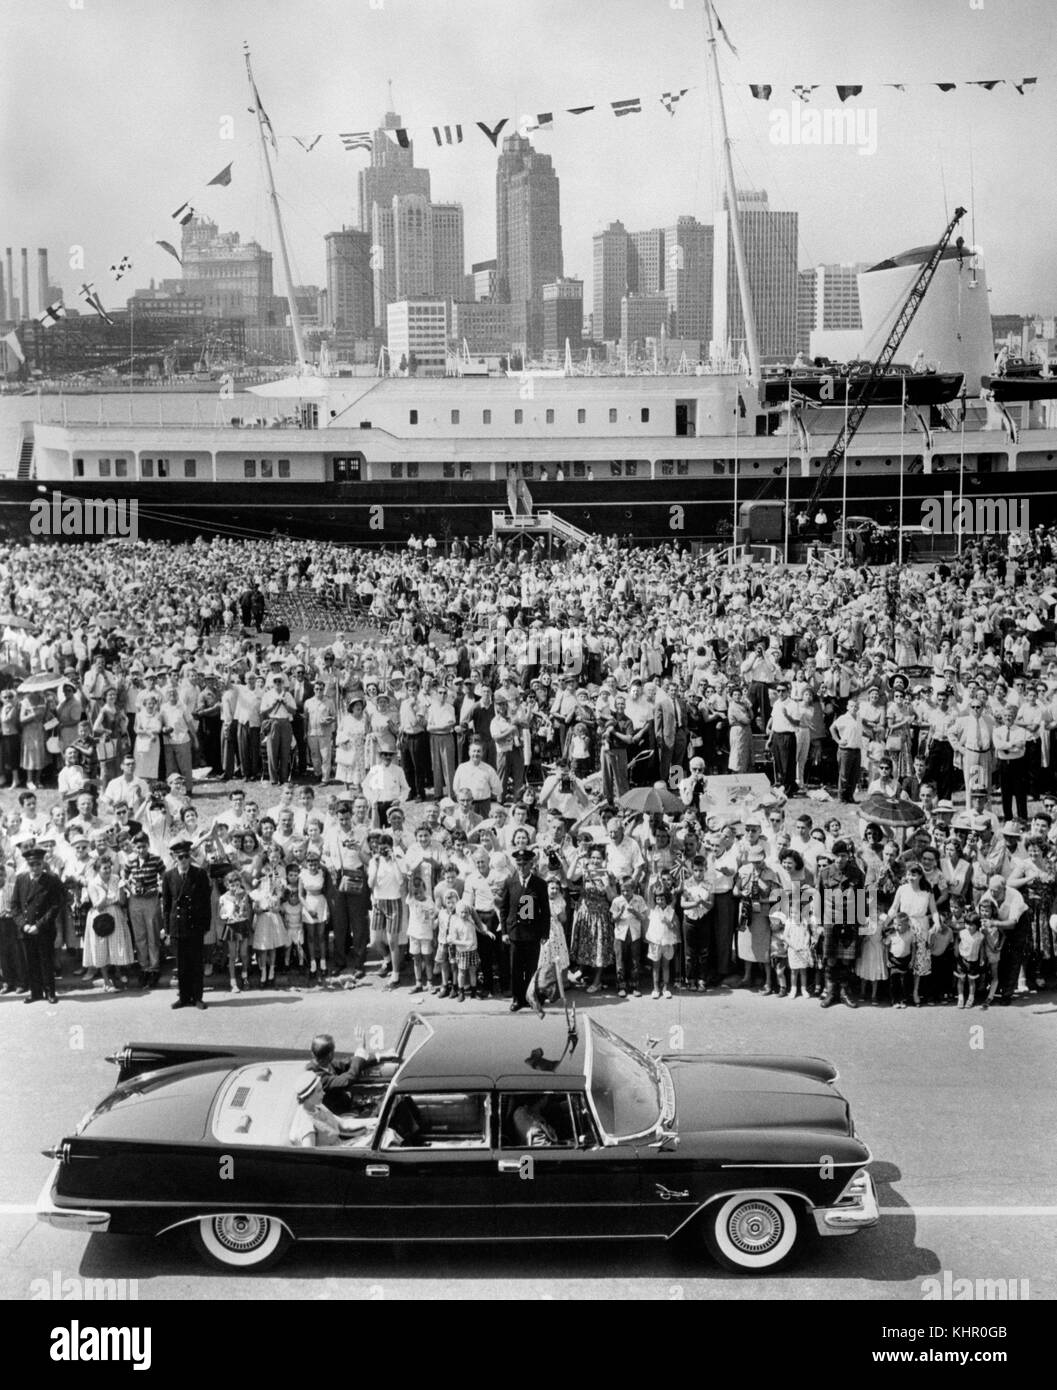 06/07/1959. La reine Elizabeth II et le duc d'Édimbourg, avec le yacht royal Britannia vu en arrière-plan, lors de la tournée royale du Canada. Le couple royal célébrera son anniversaire de mariage en platine le 20 novembre. Banque D'Images